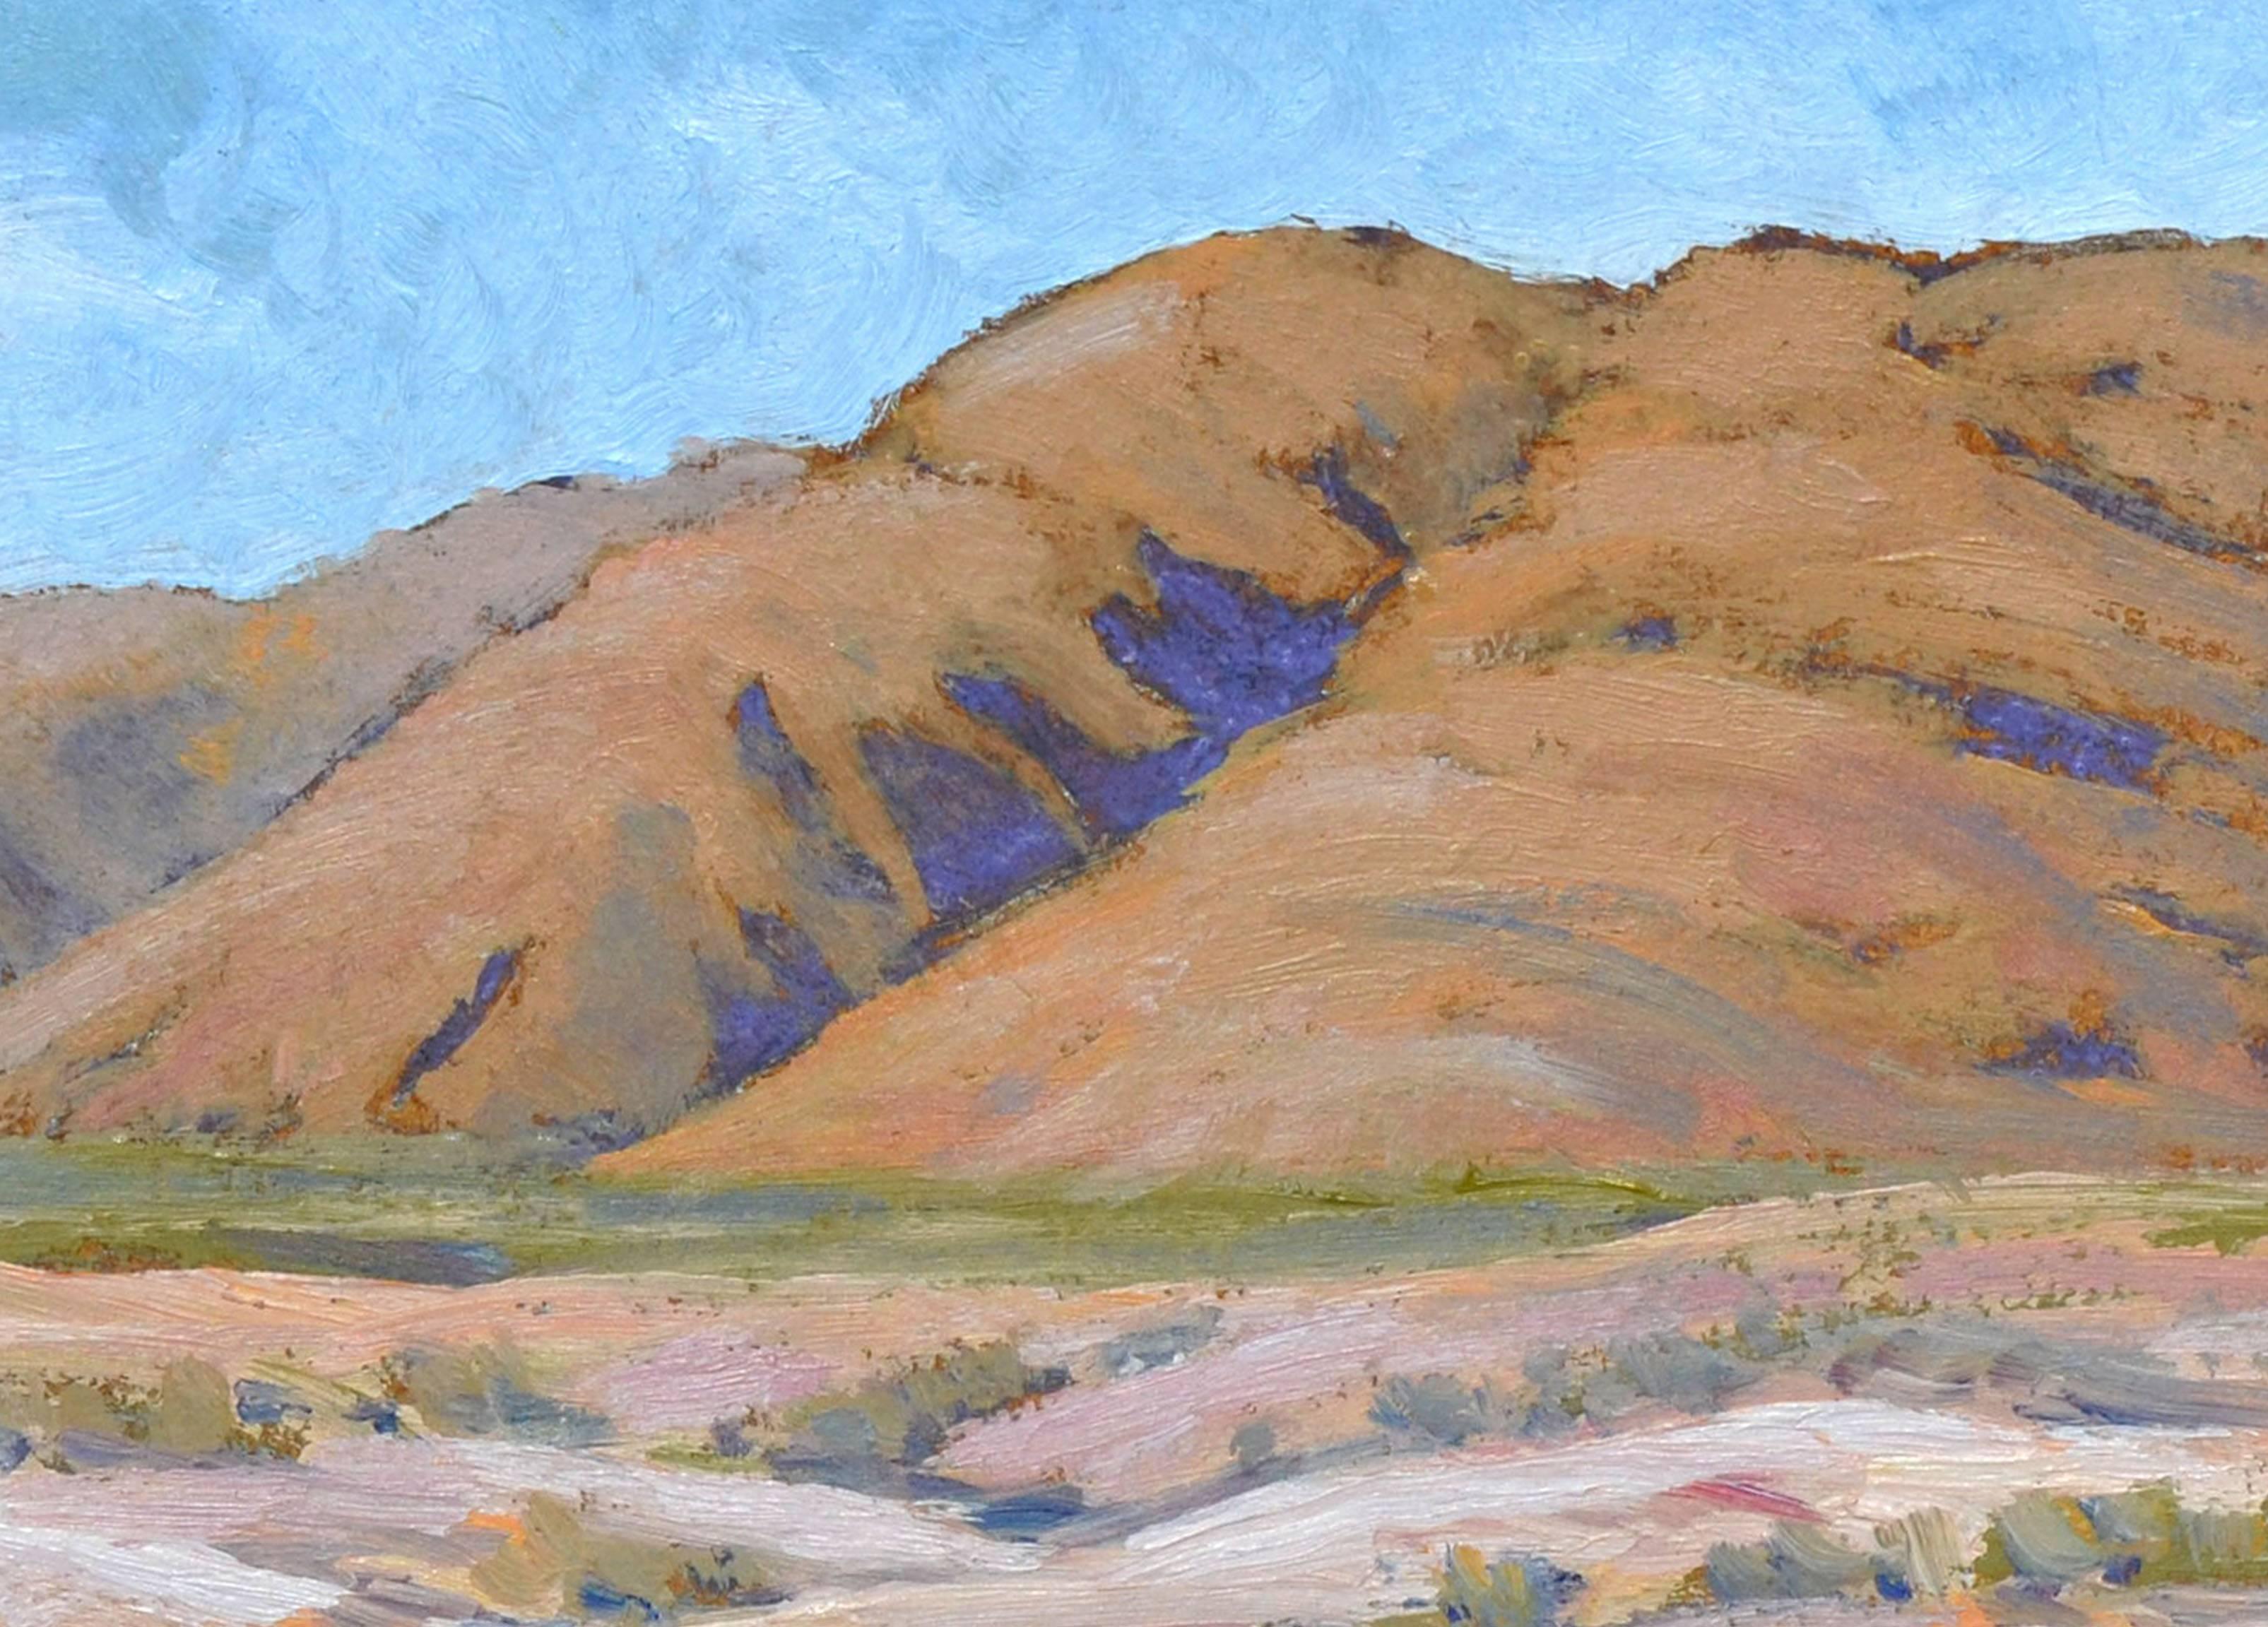 desert mountains drawing